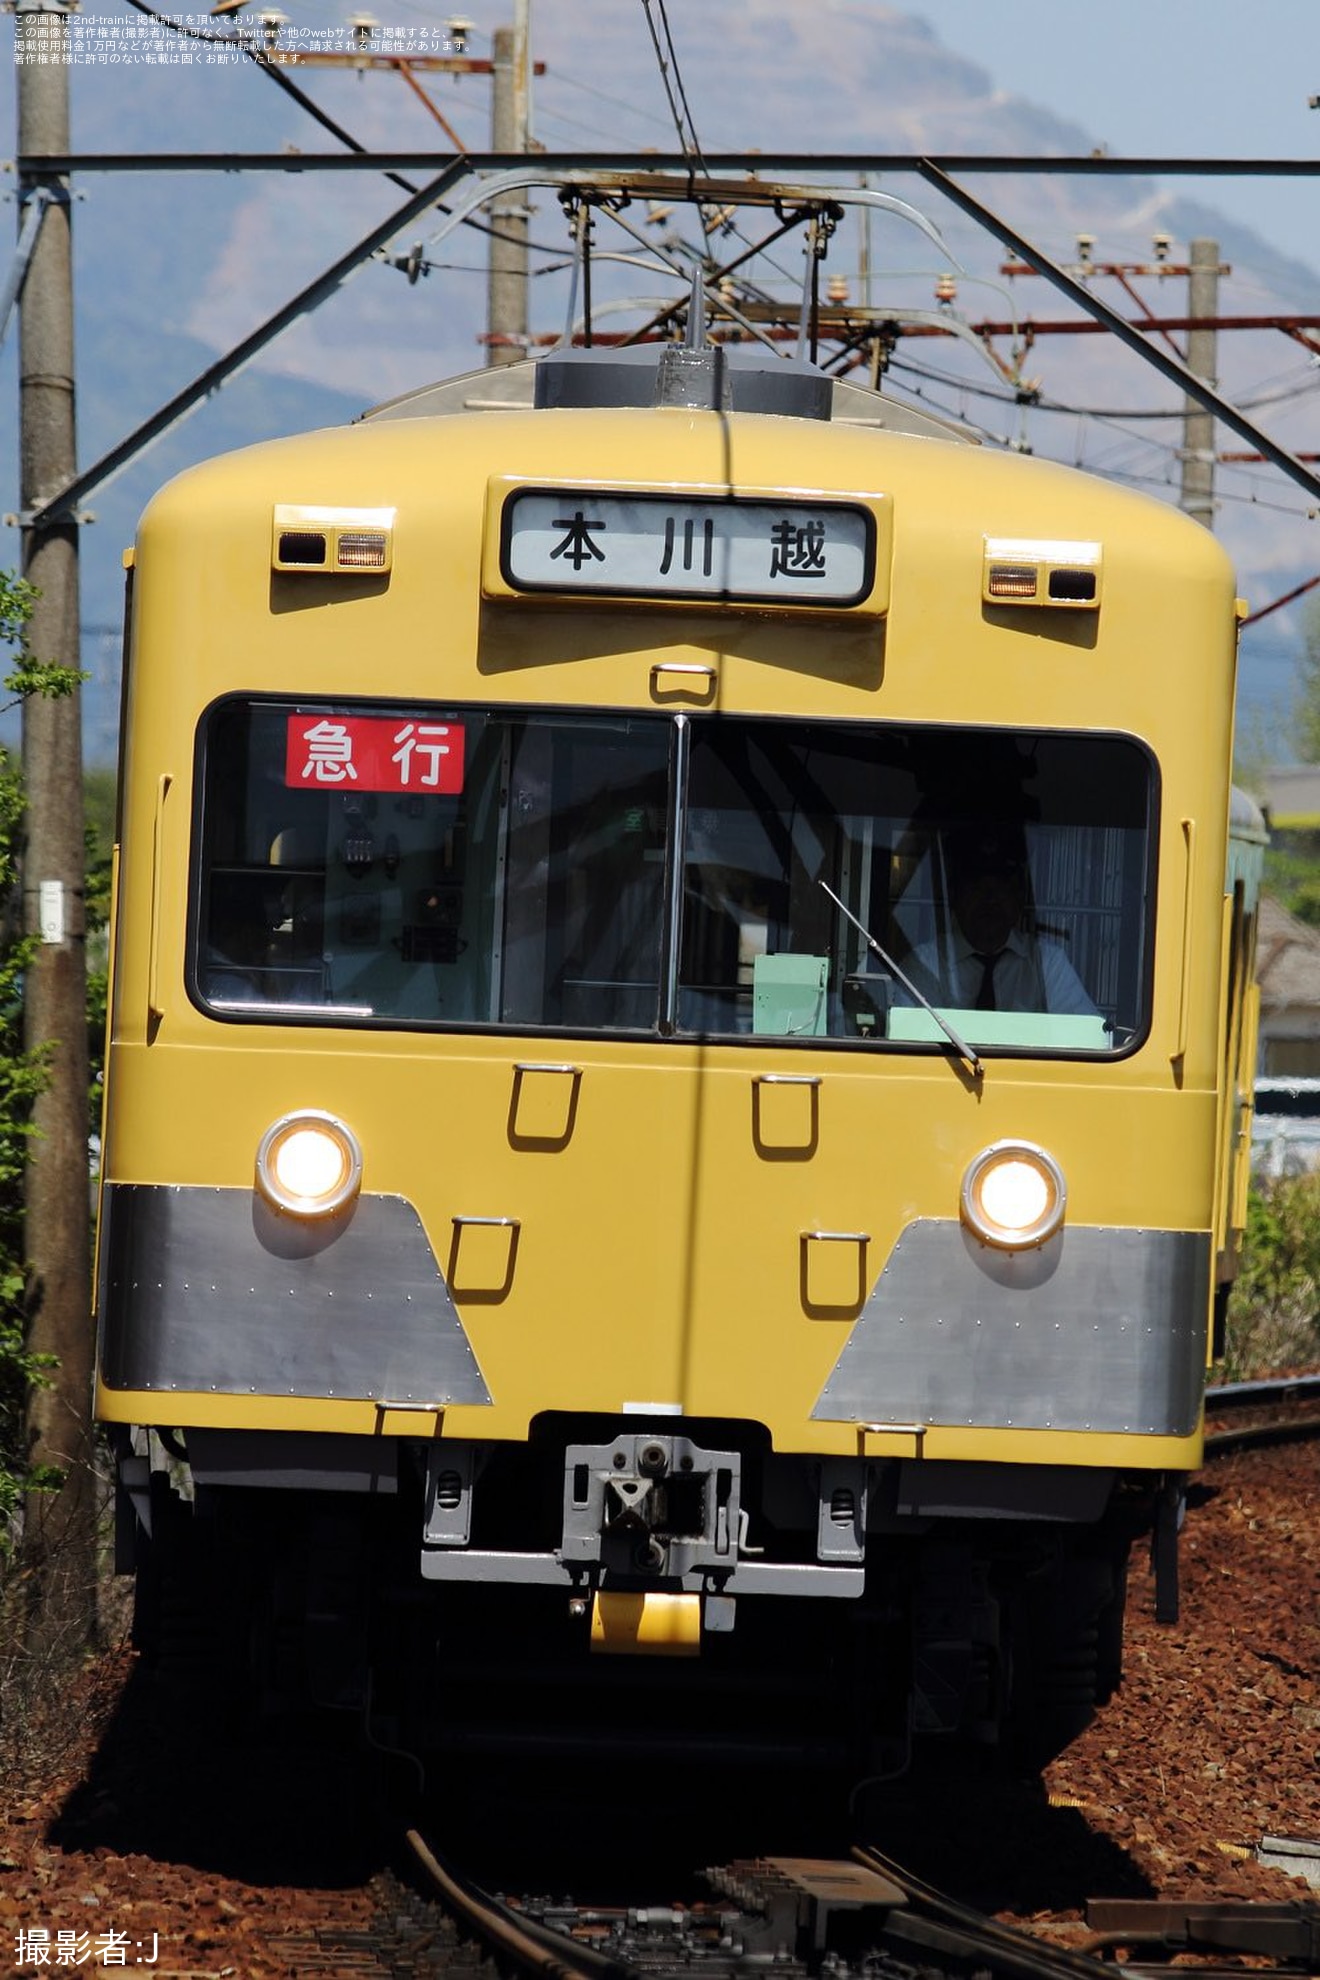 【三岐】801形805Fを使用した団体臨時列車の拡大写真